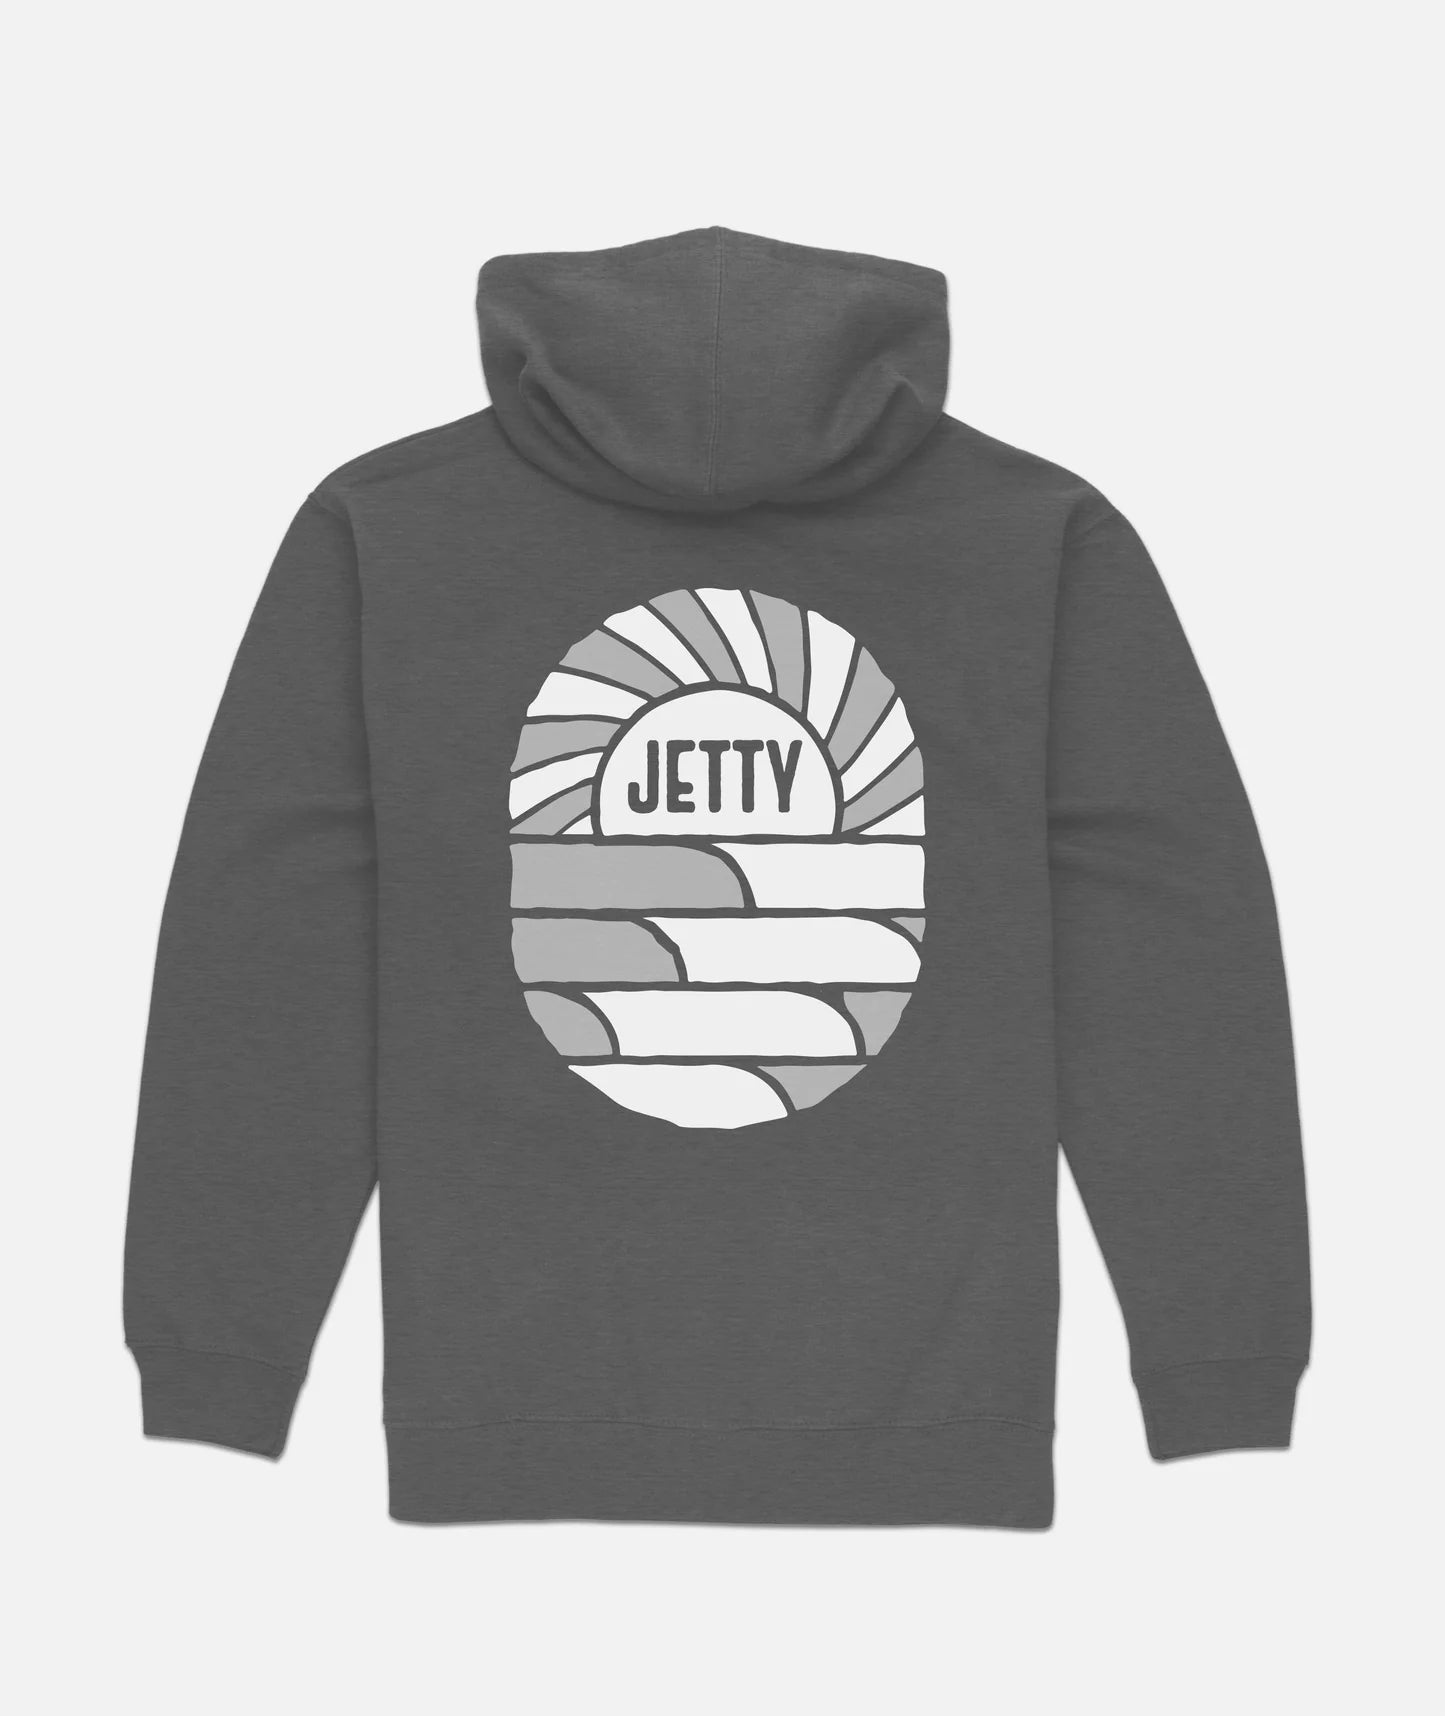 Jetty - Point Break Hoodie